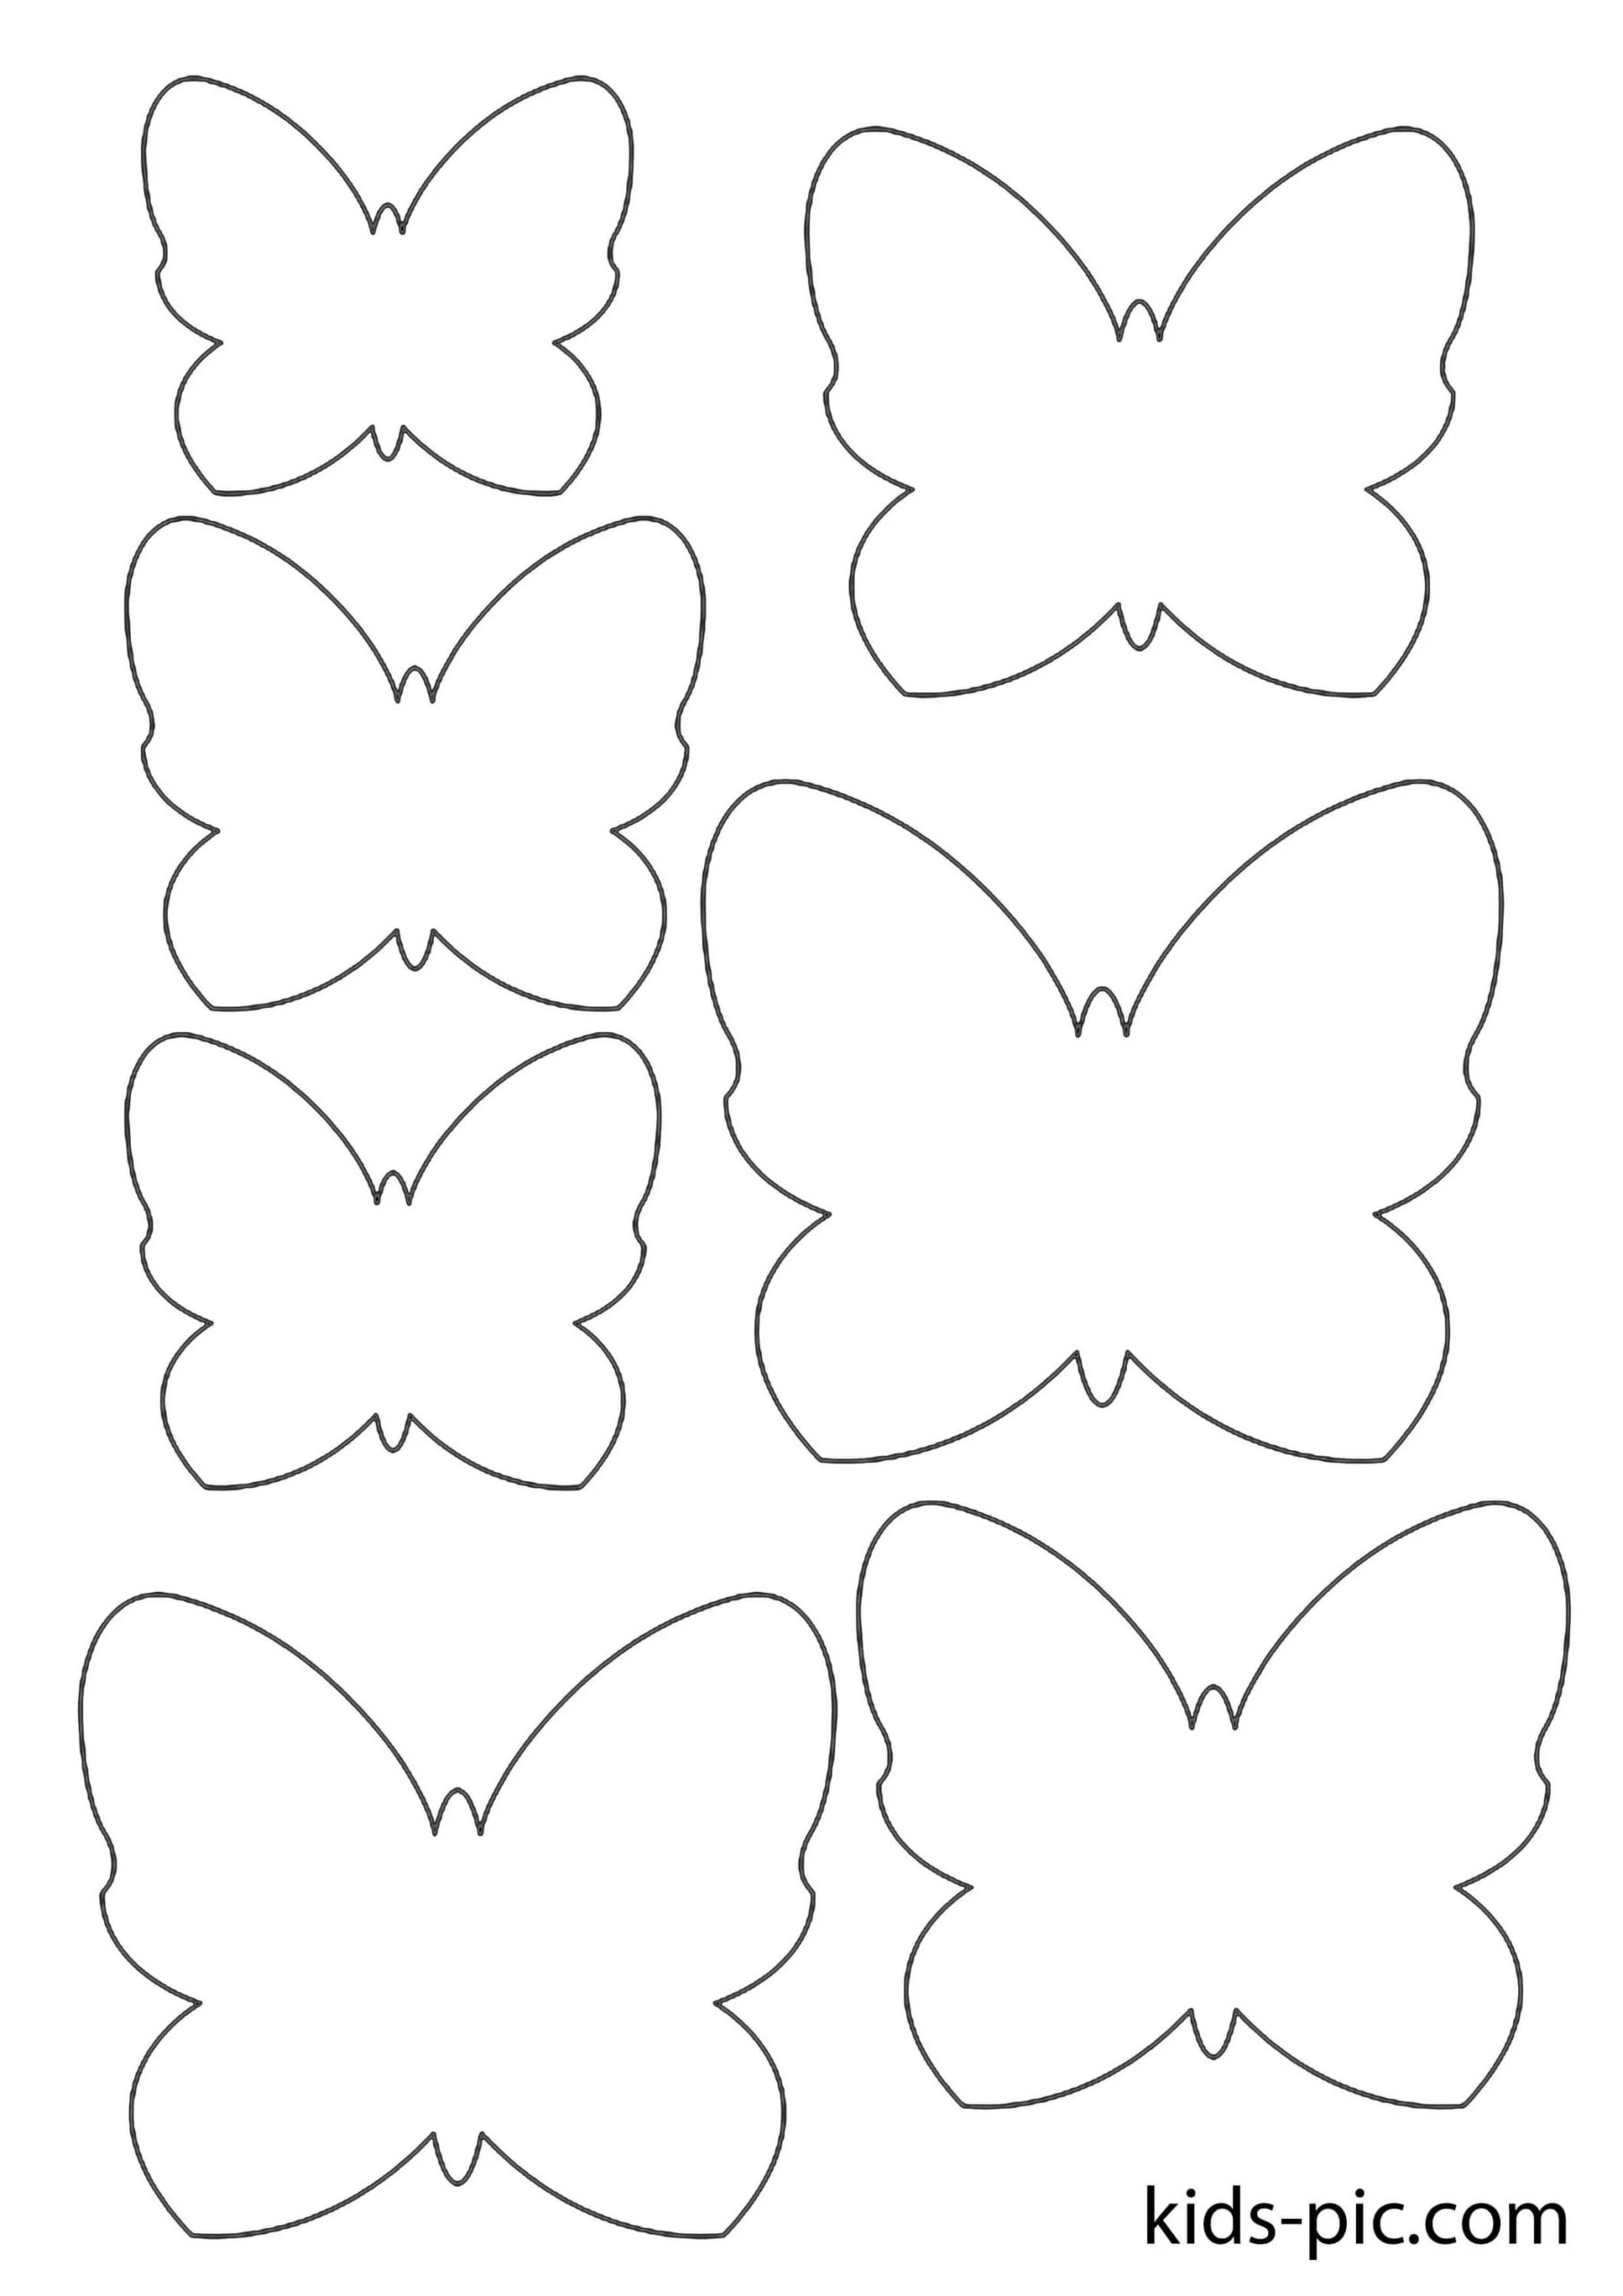 Шаблоны и трафарет бабочки для вырезания из бумаги: скачать и распечатать